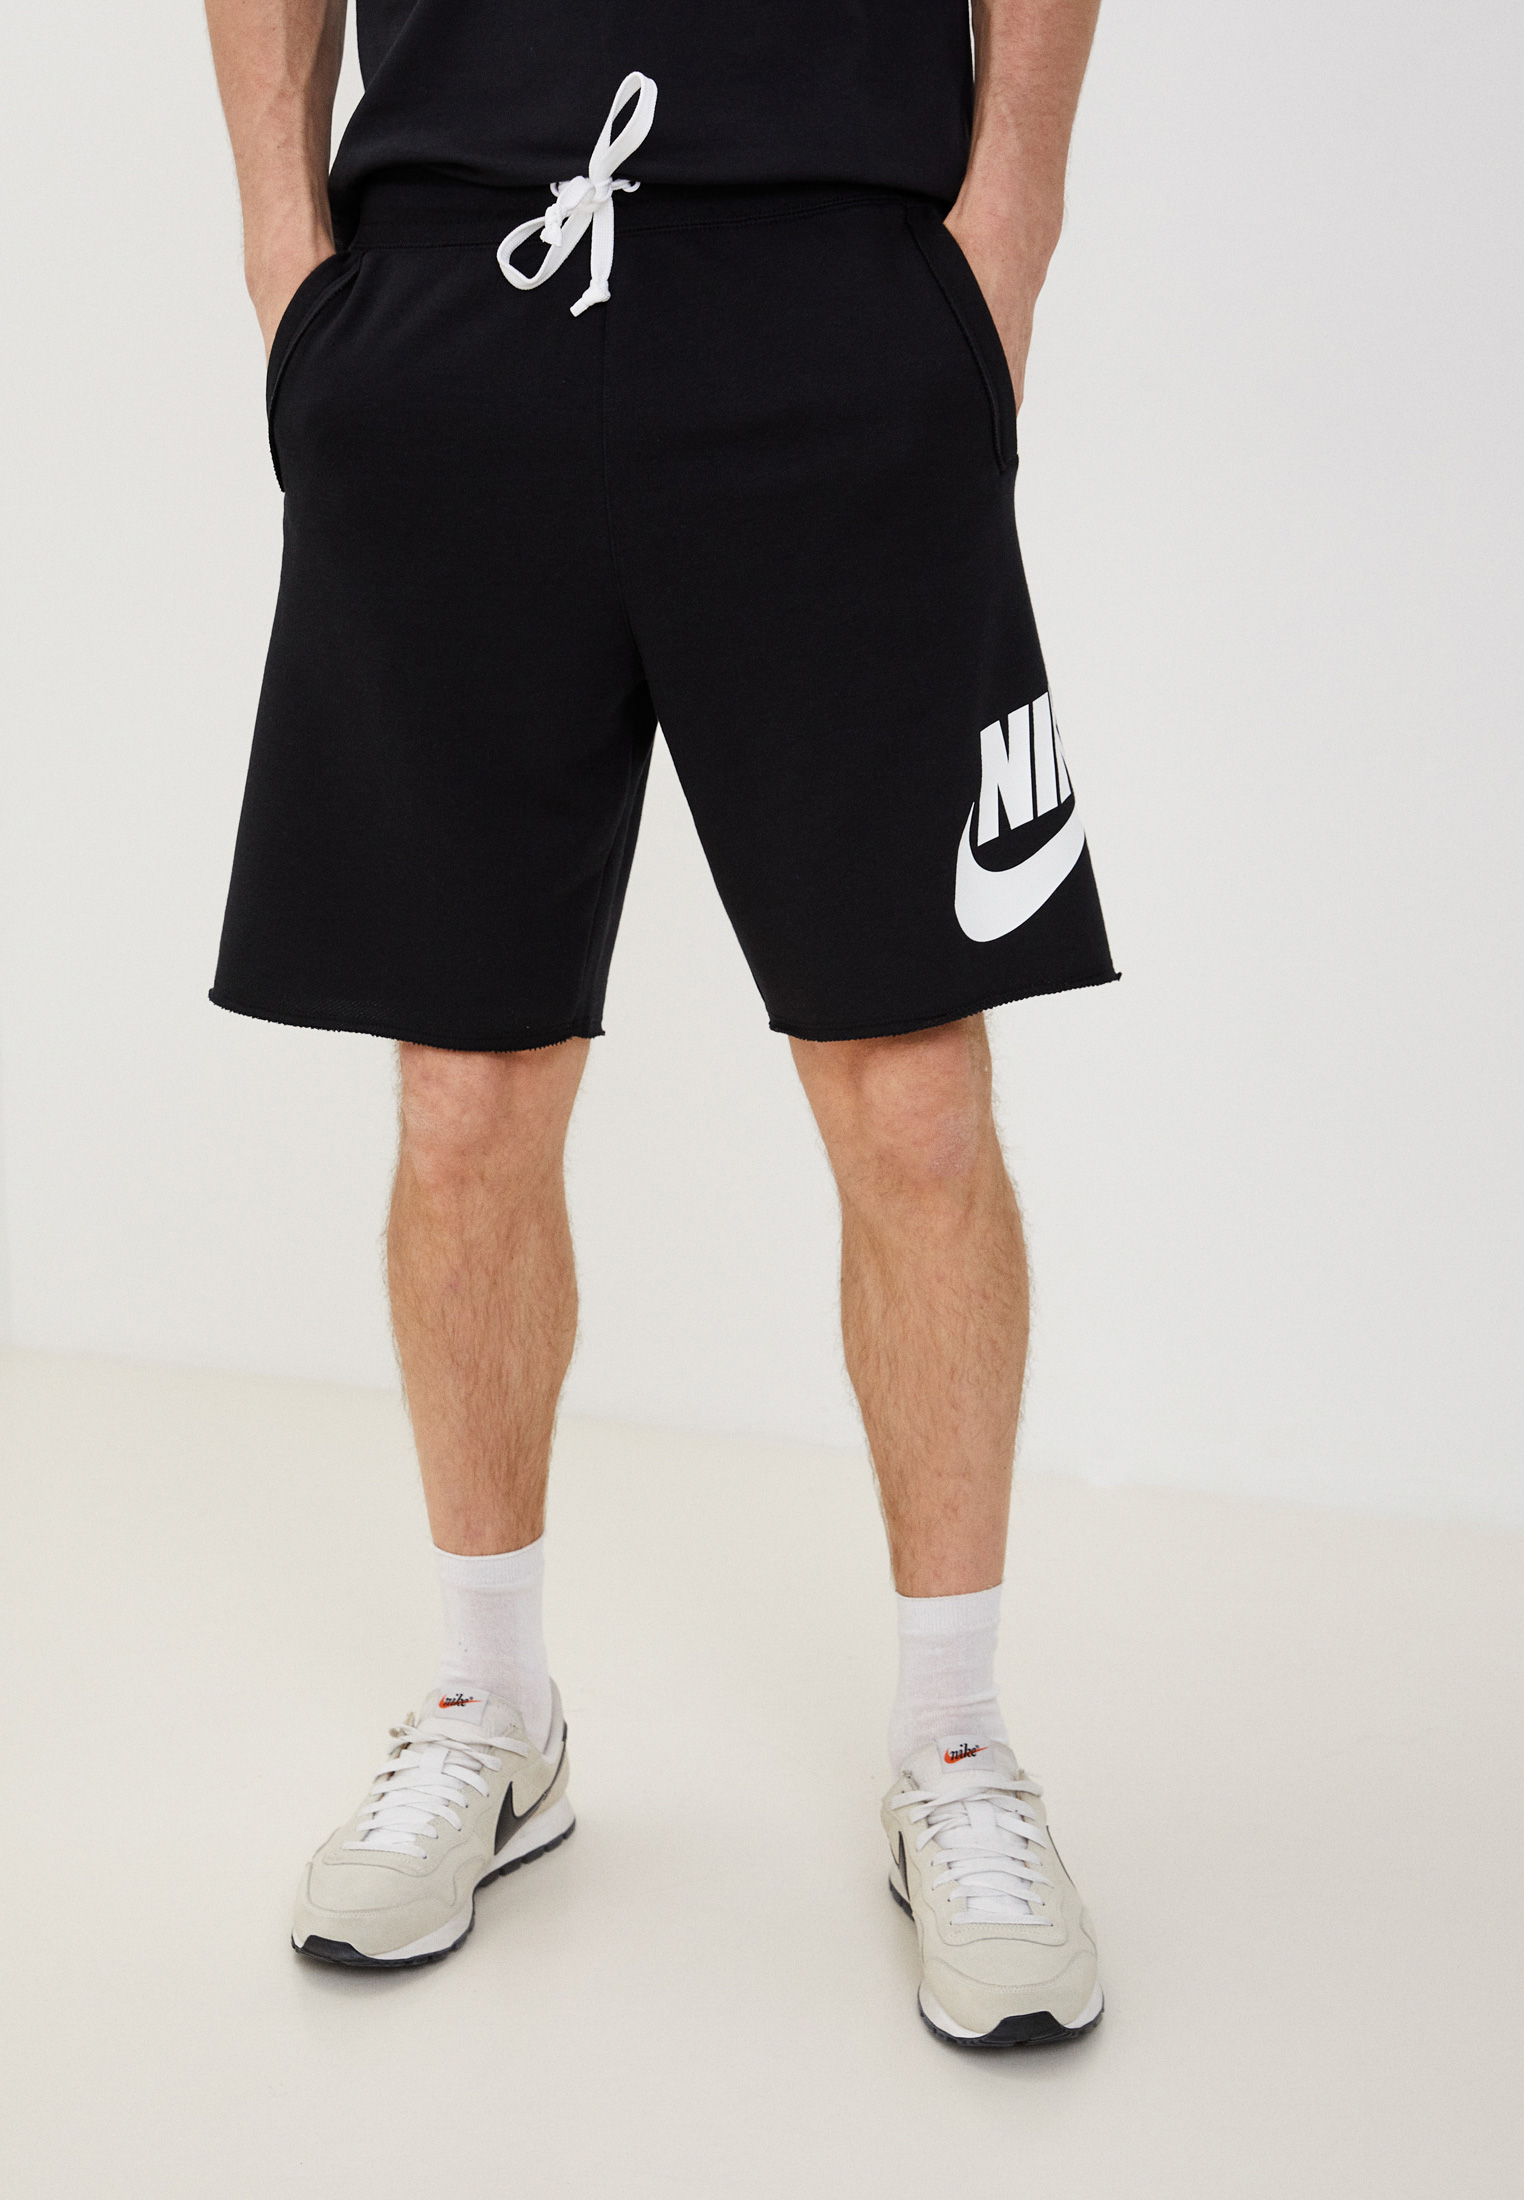 Мужские спортивные шорты Nike (Найк) DM6817 купить за 6199 руб.